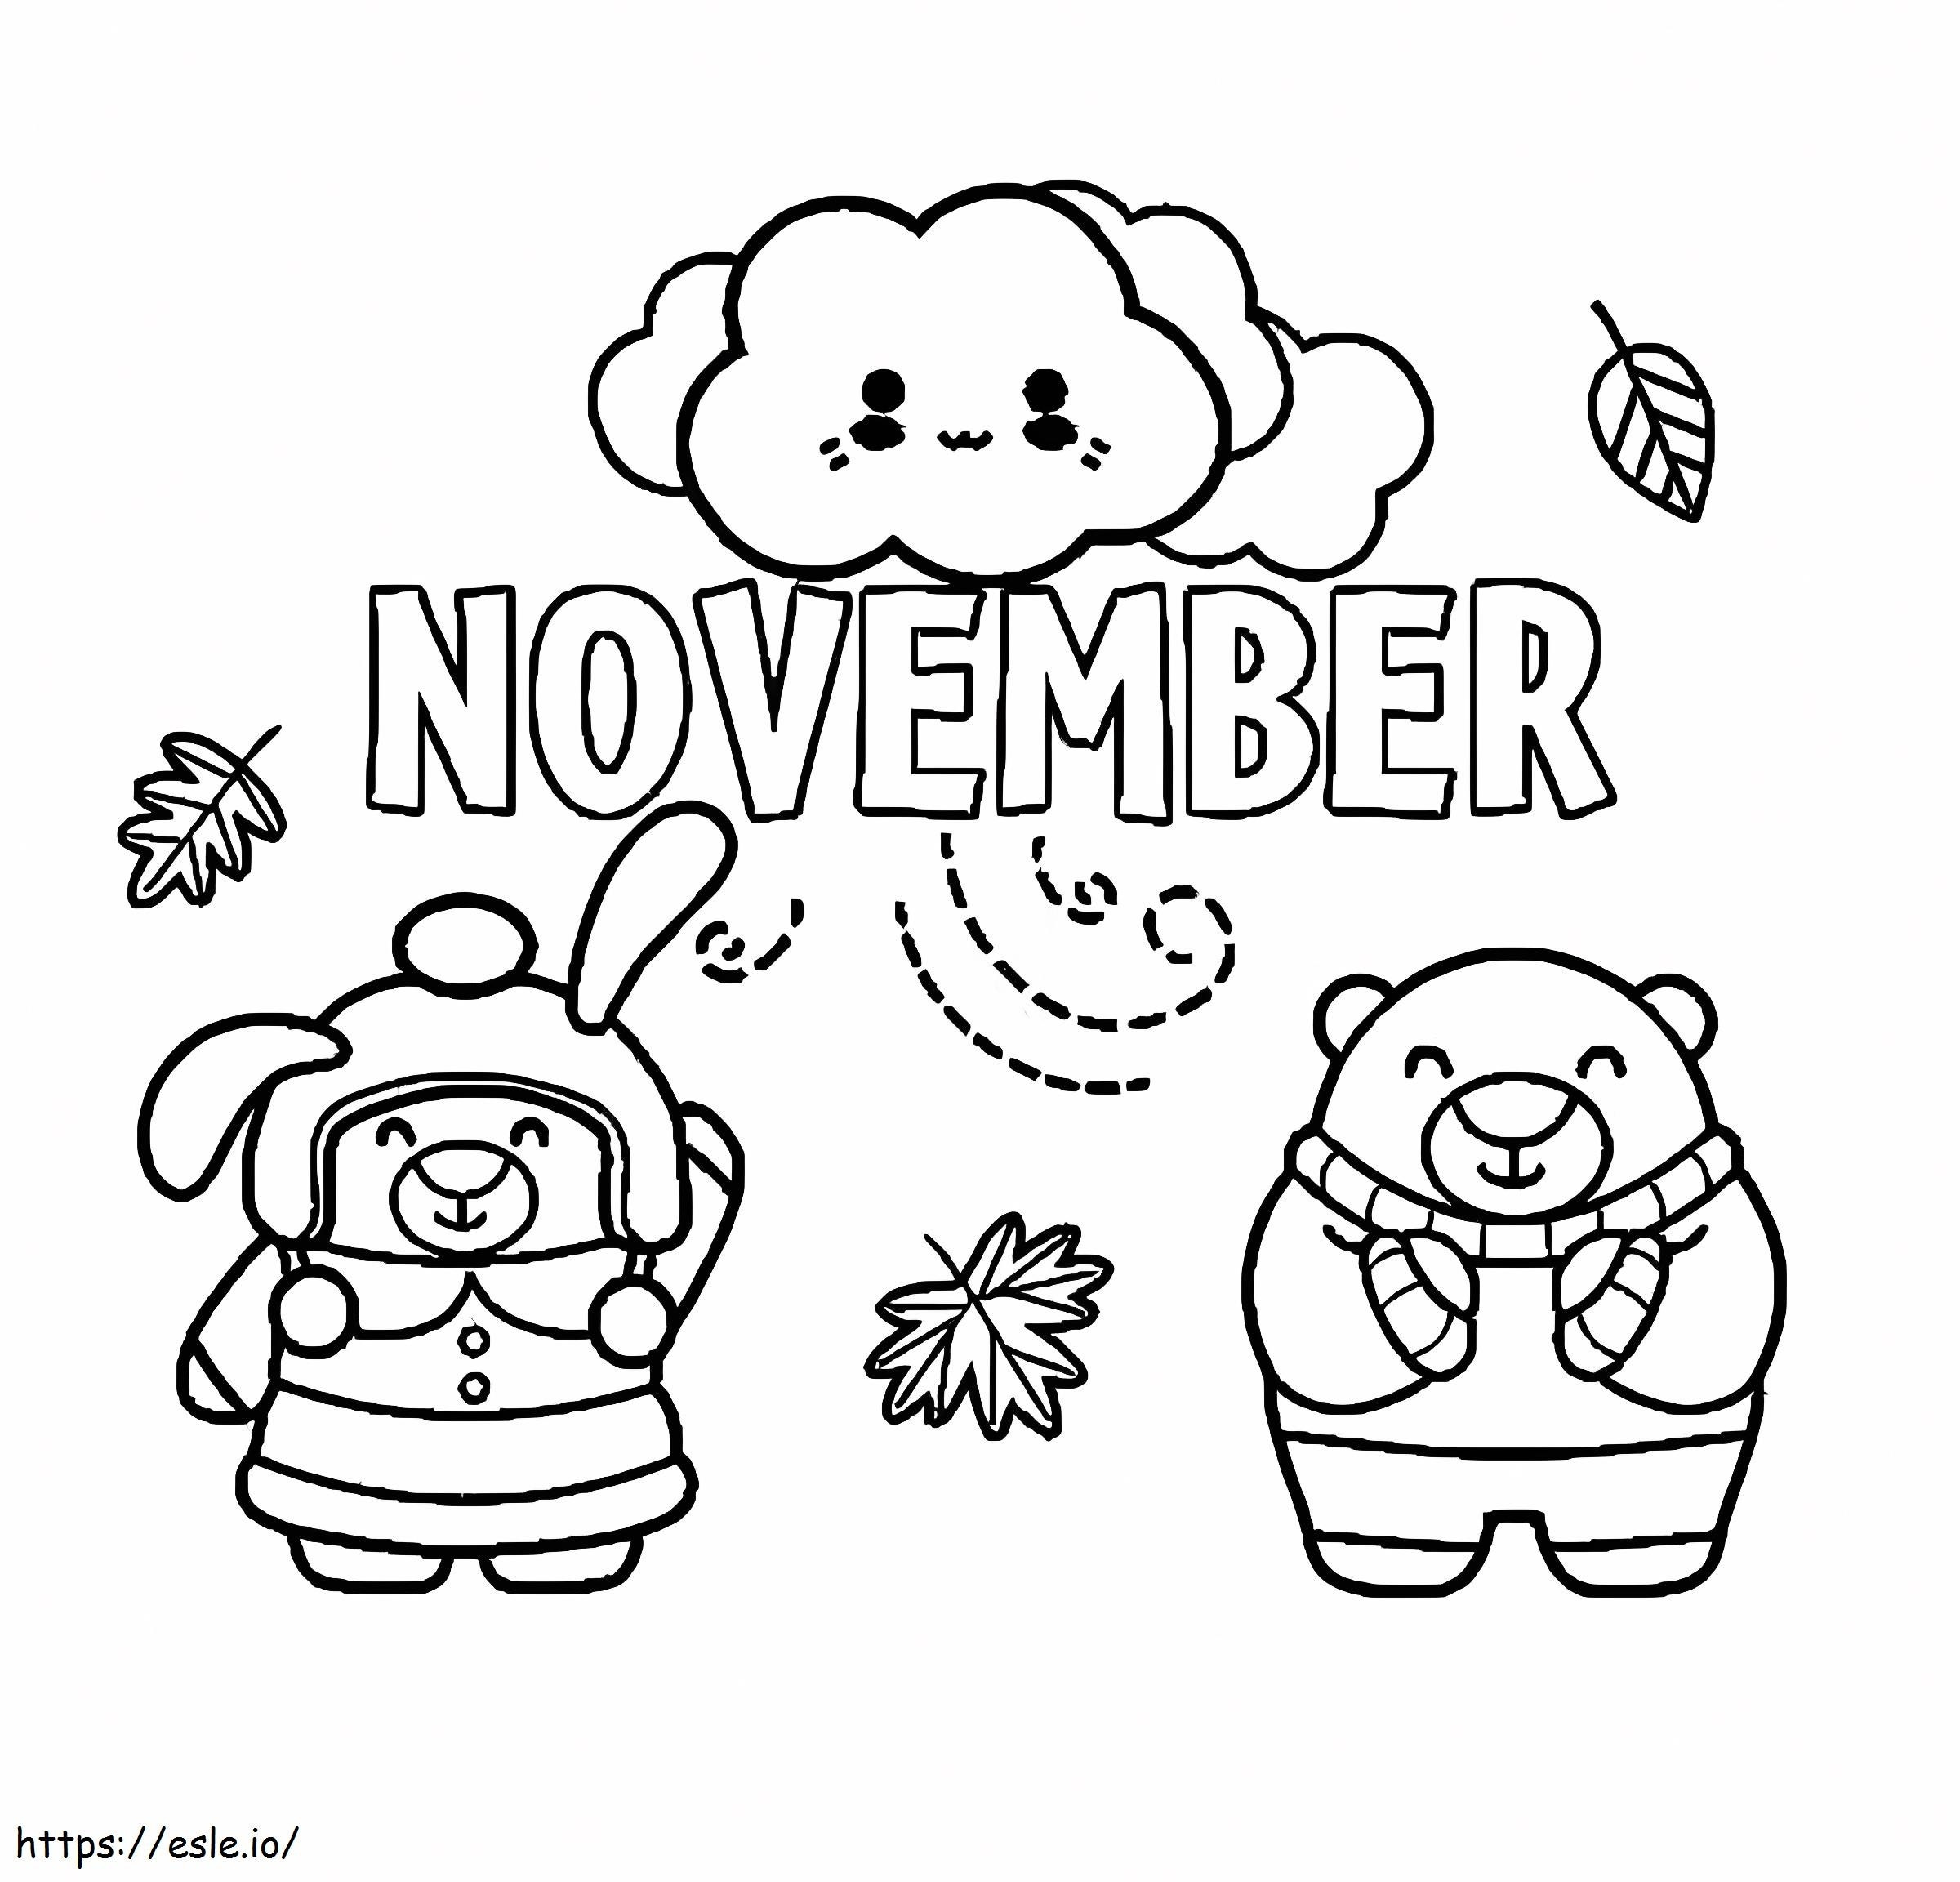 November Cartoon Animal coloring page